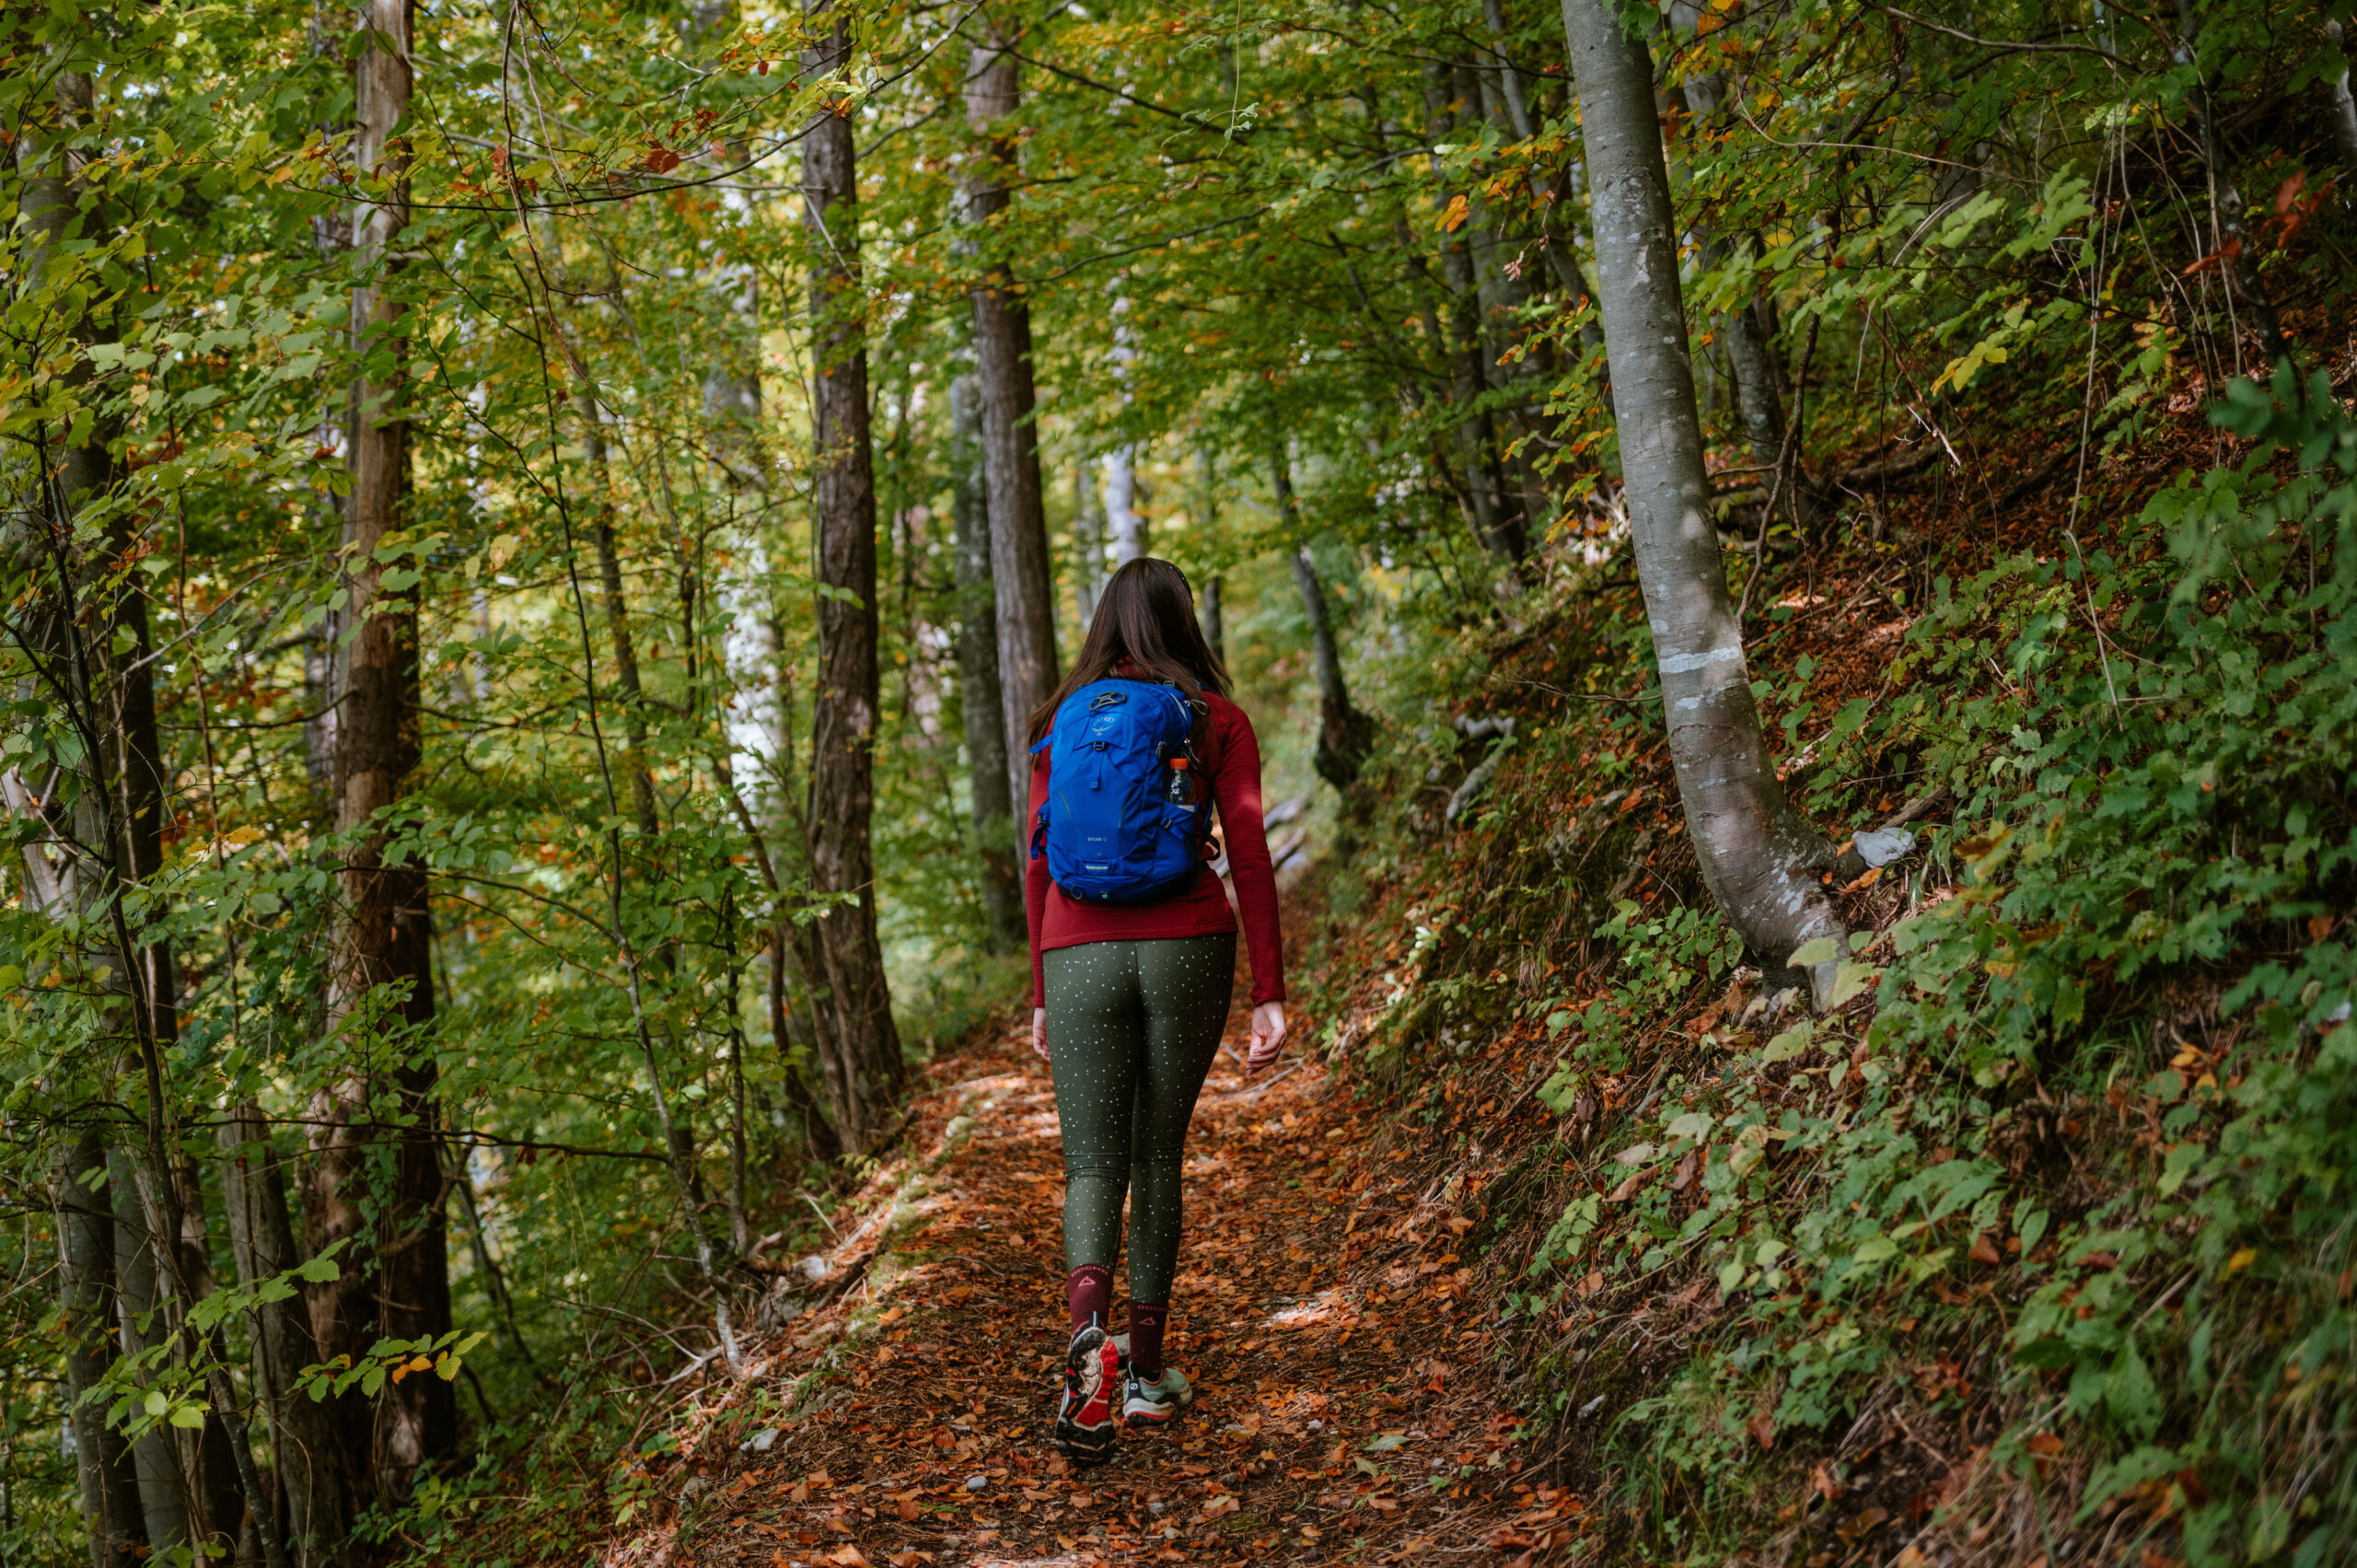 Ljepota šetnje goranskom šumom / Foto M. JURINA